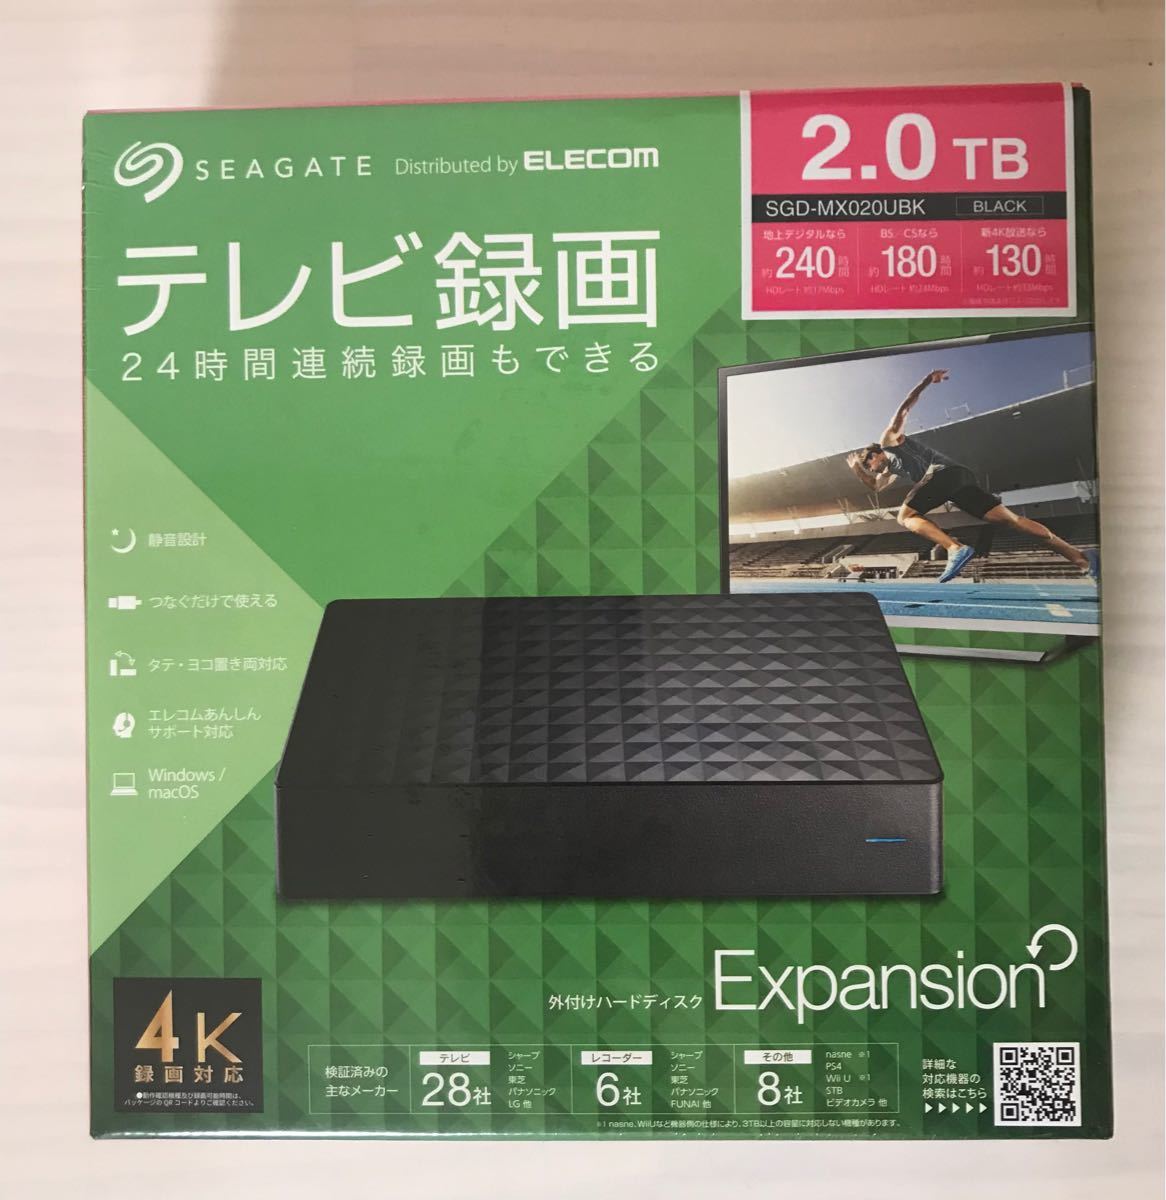 『限定セール』SGD-MX020UBK2TB 外付けハードディスク 新品未開封